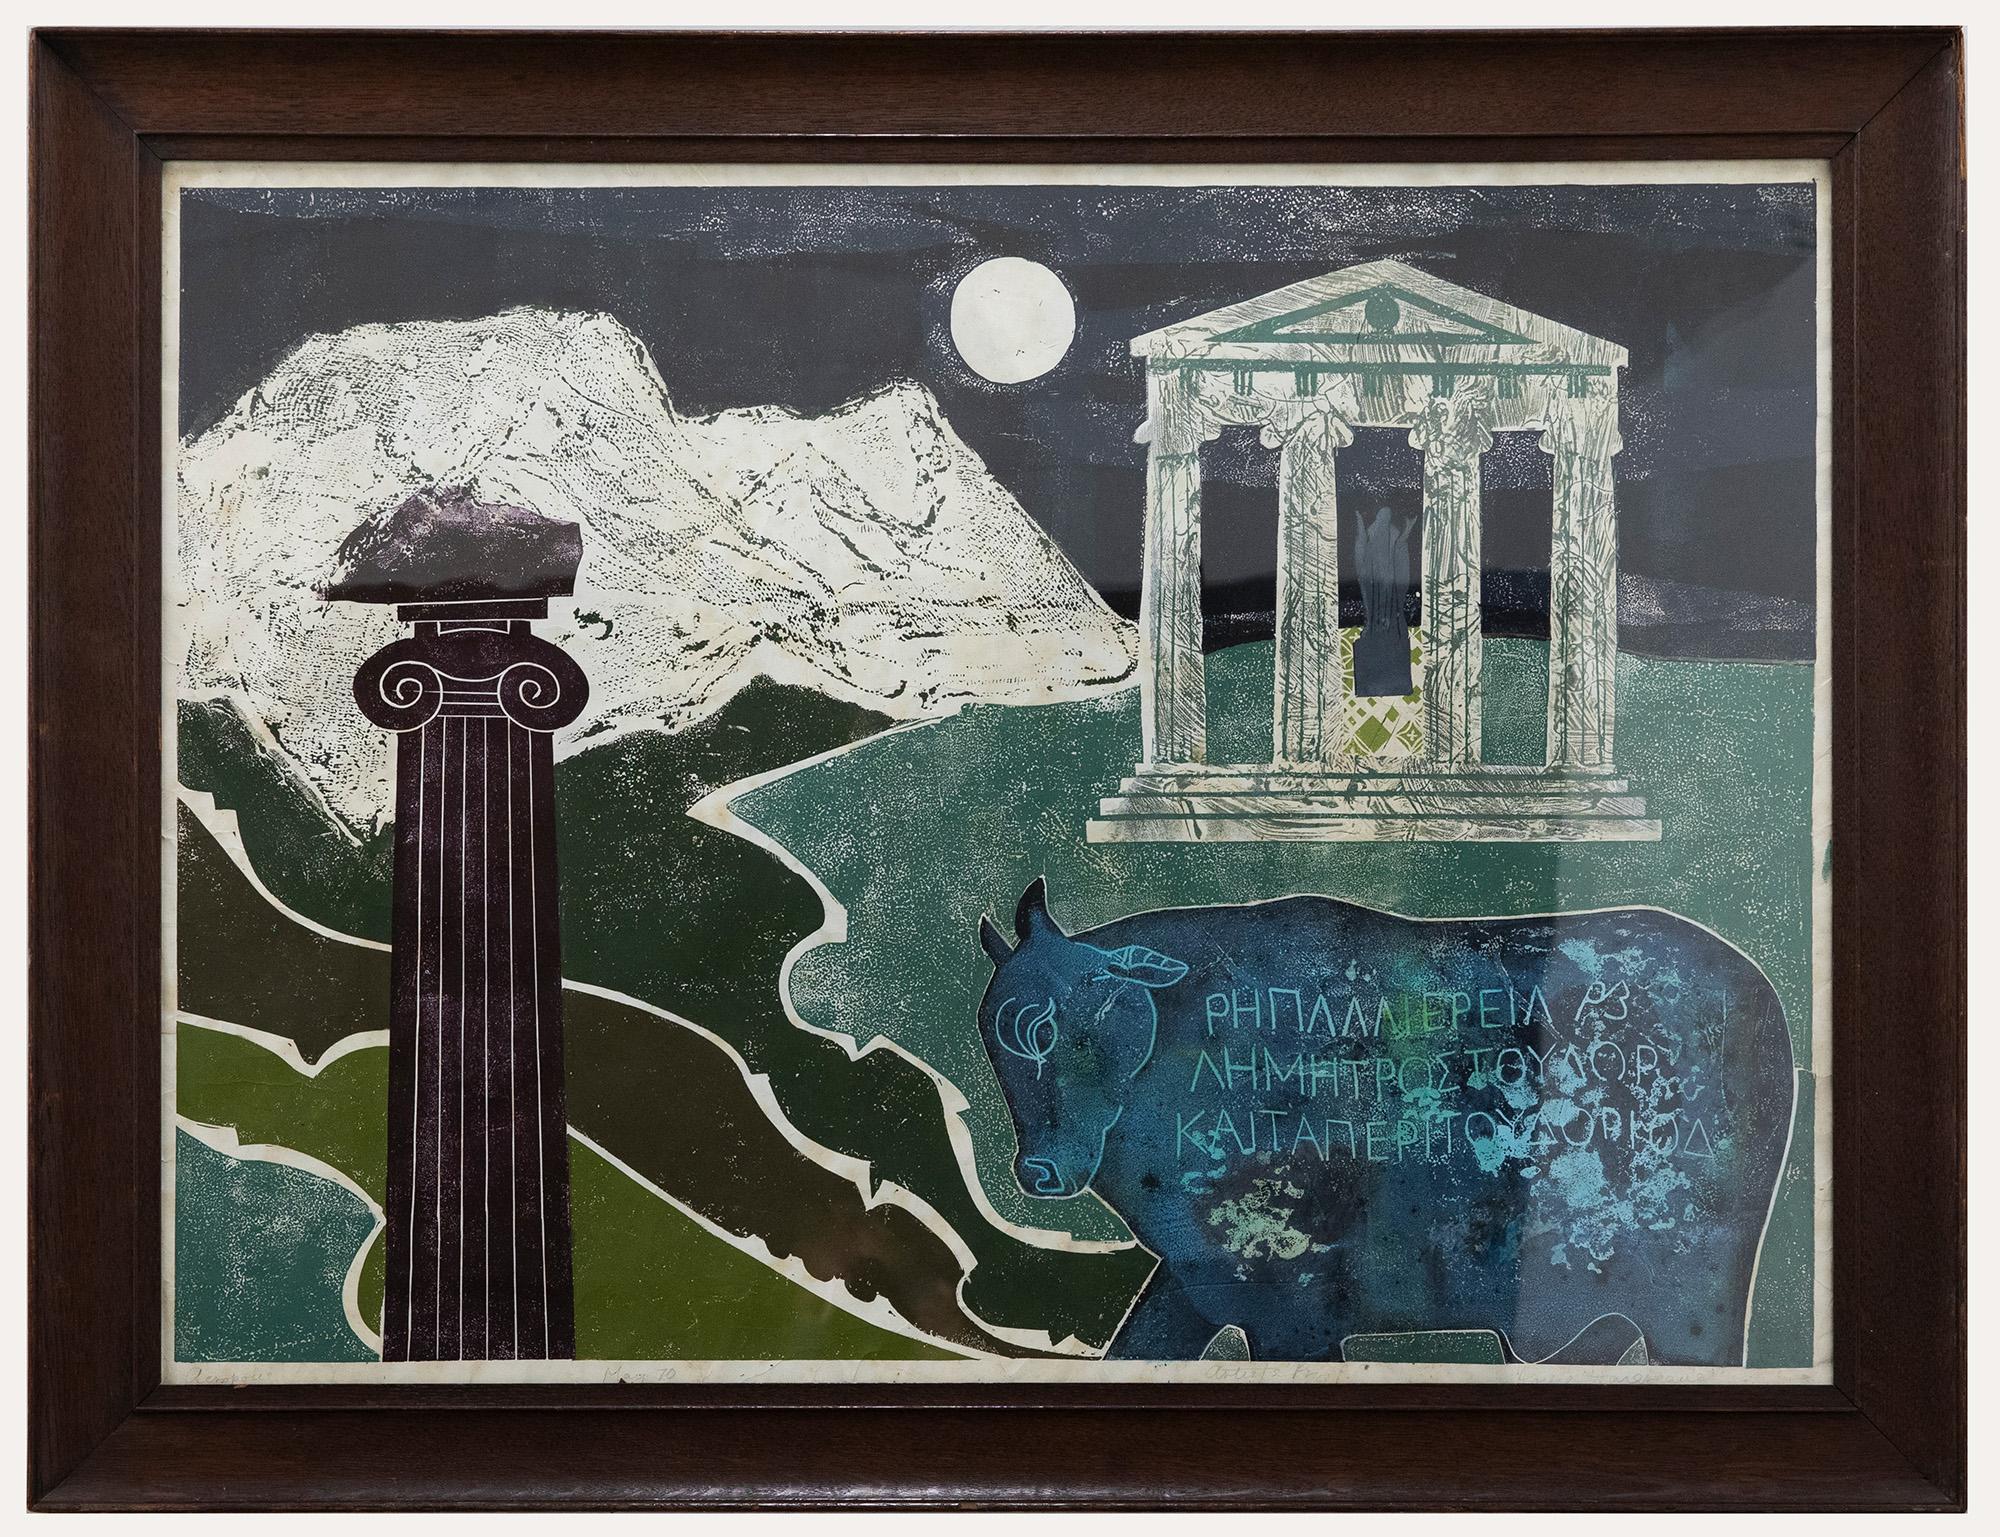 Une interprétation imaginative de l'Acropole d'Athènes en Grèce. La scène montre l'Acropole sur une colline avec une colonne dorique et un taureau au premier plan. Signé, titré et daté sur la bordure inférieure. Artistics proof. Présenté dans un